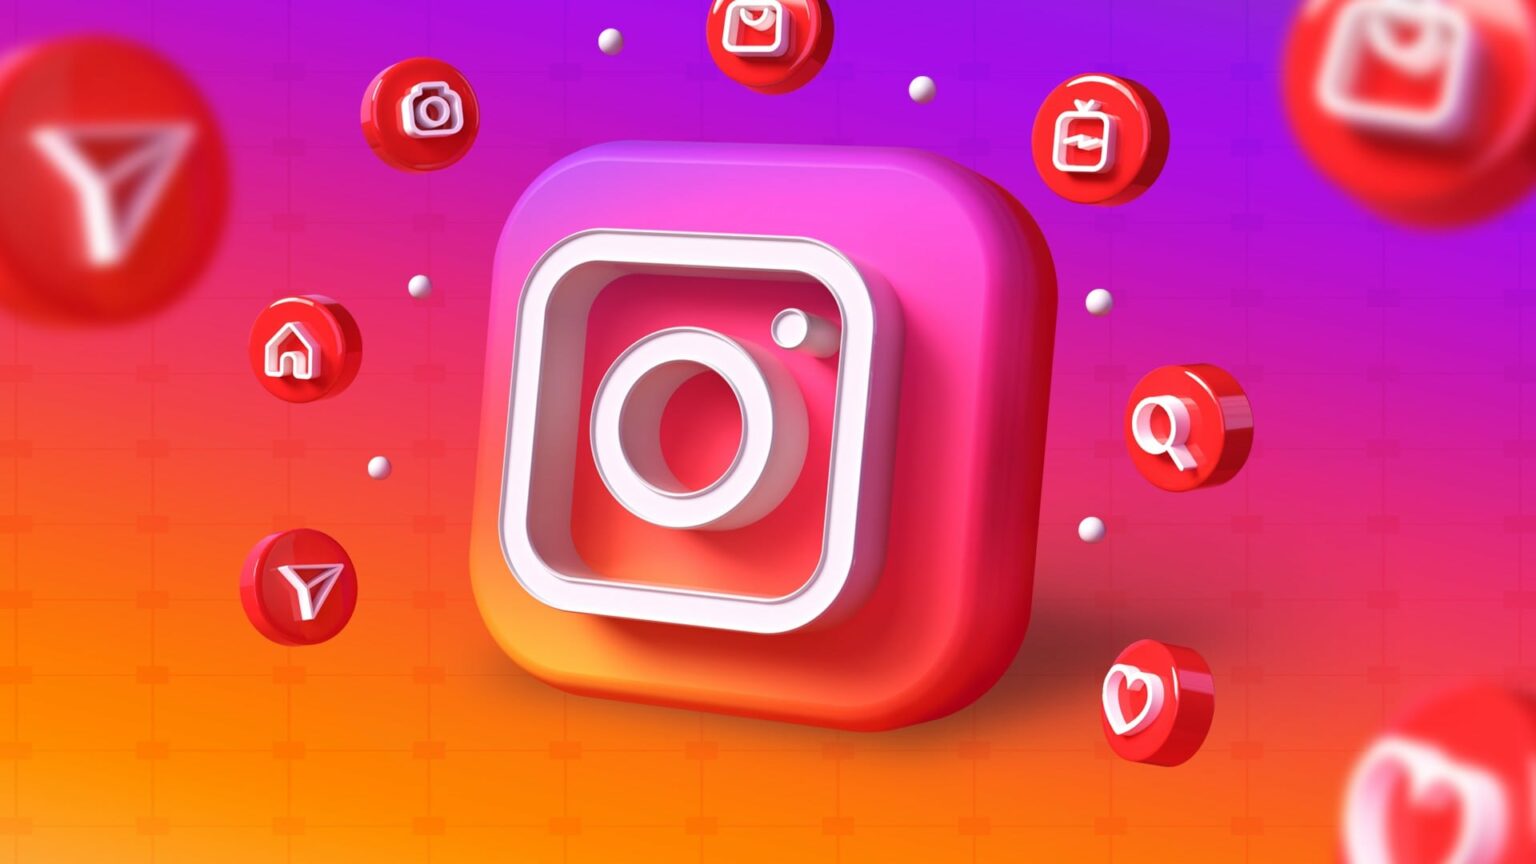 Instagram explica cómo funciona su algoritmo